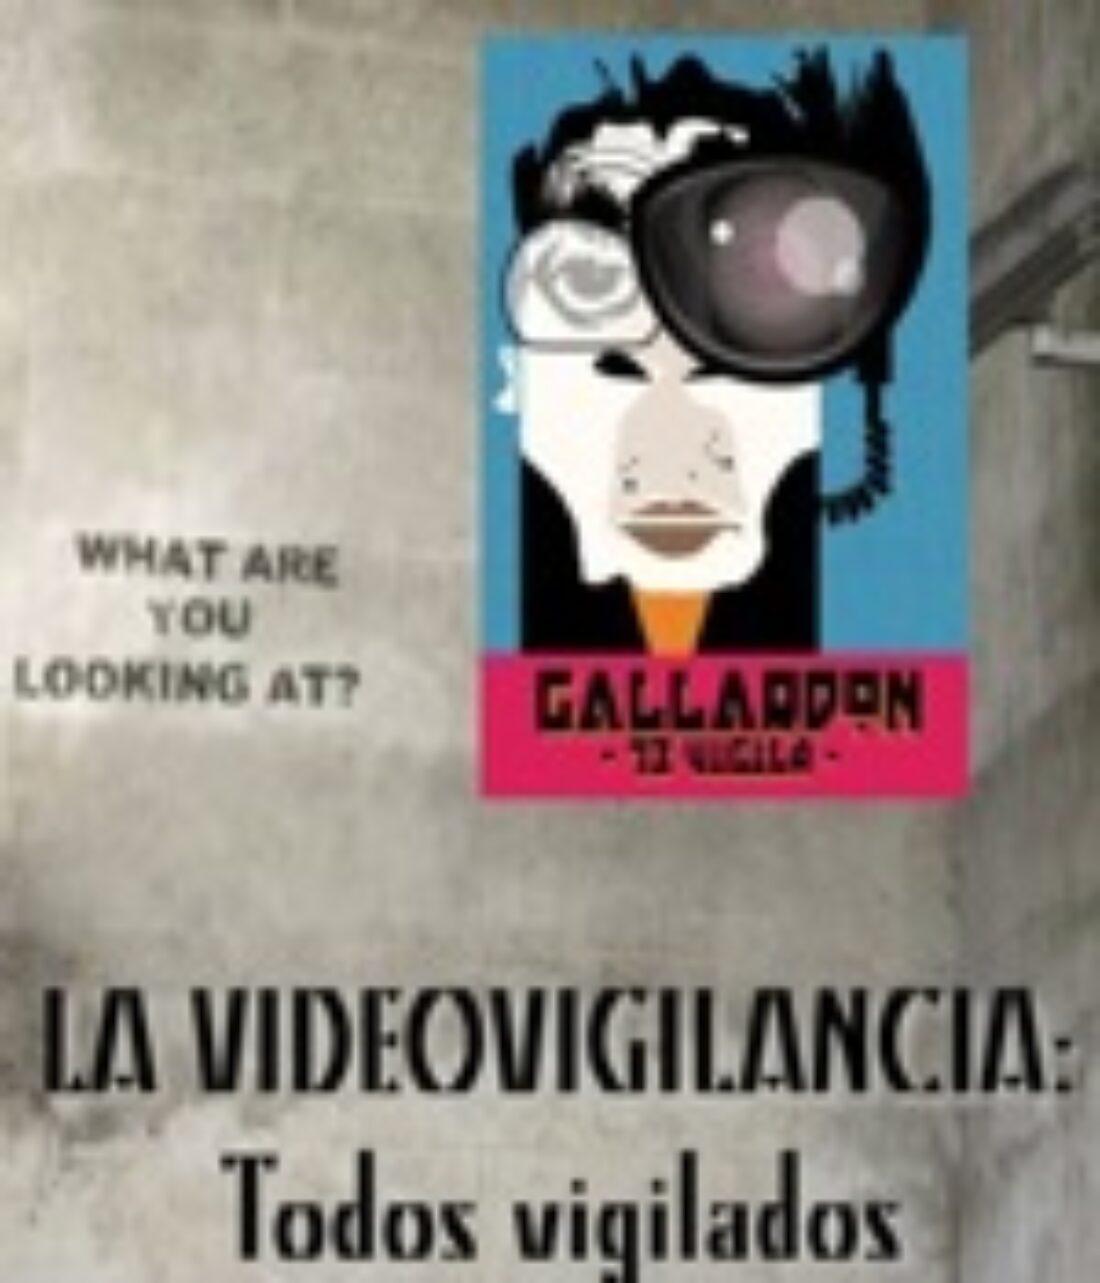 17 dic. Ateneo «La Idea», Madrid : «Todos vigilados. La videovigilancia»